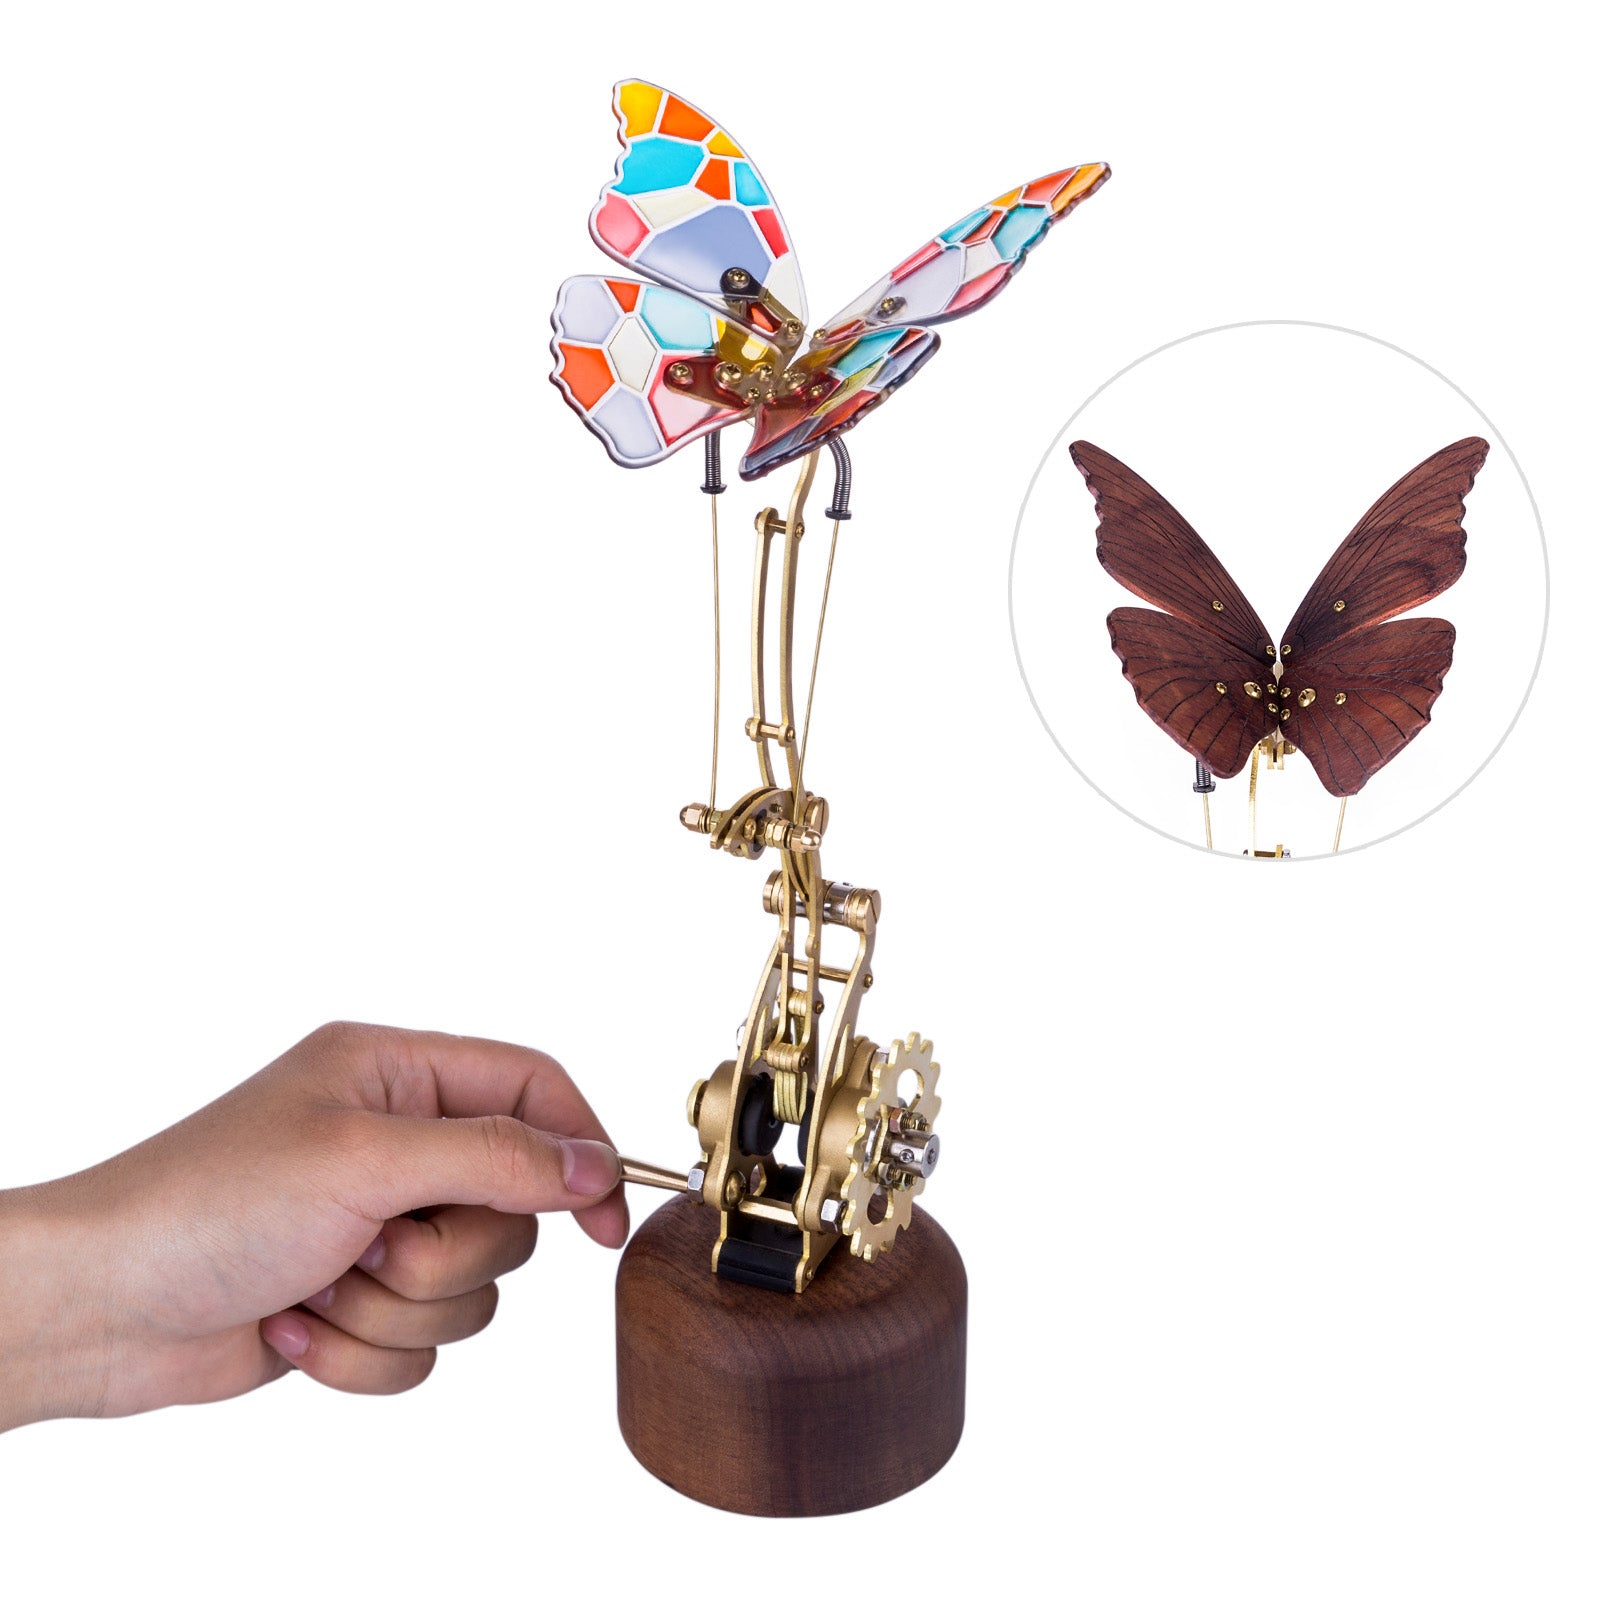 3D Mechanical Kinetic Flying Dreamy Butterfly Model Kits